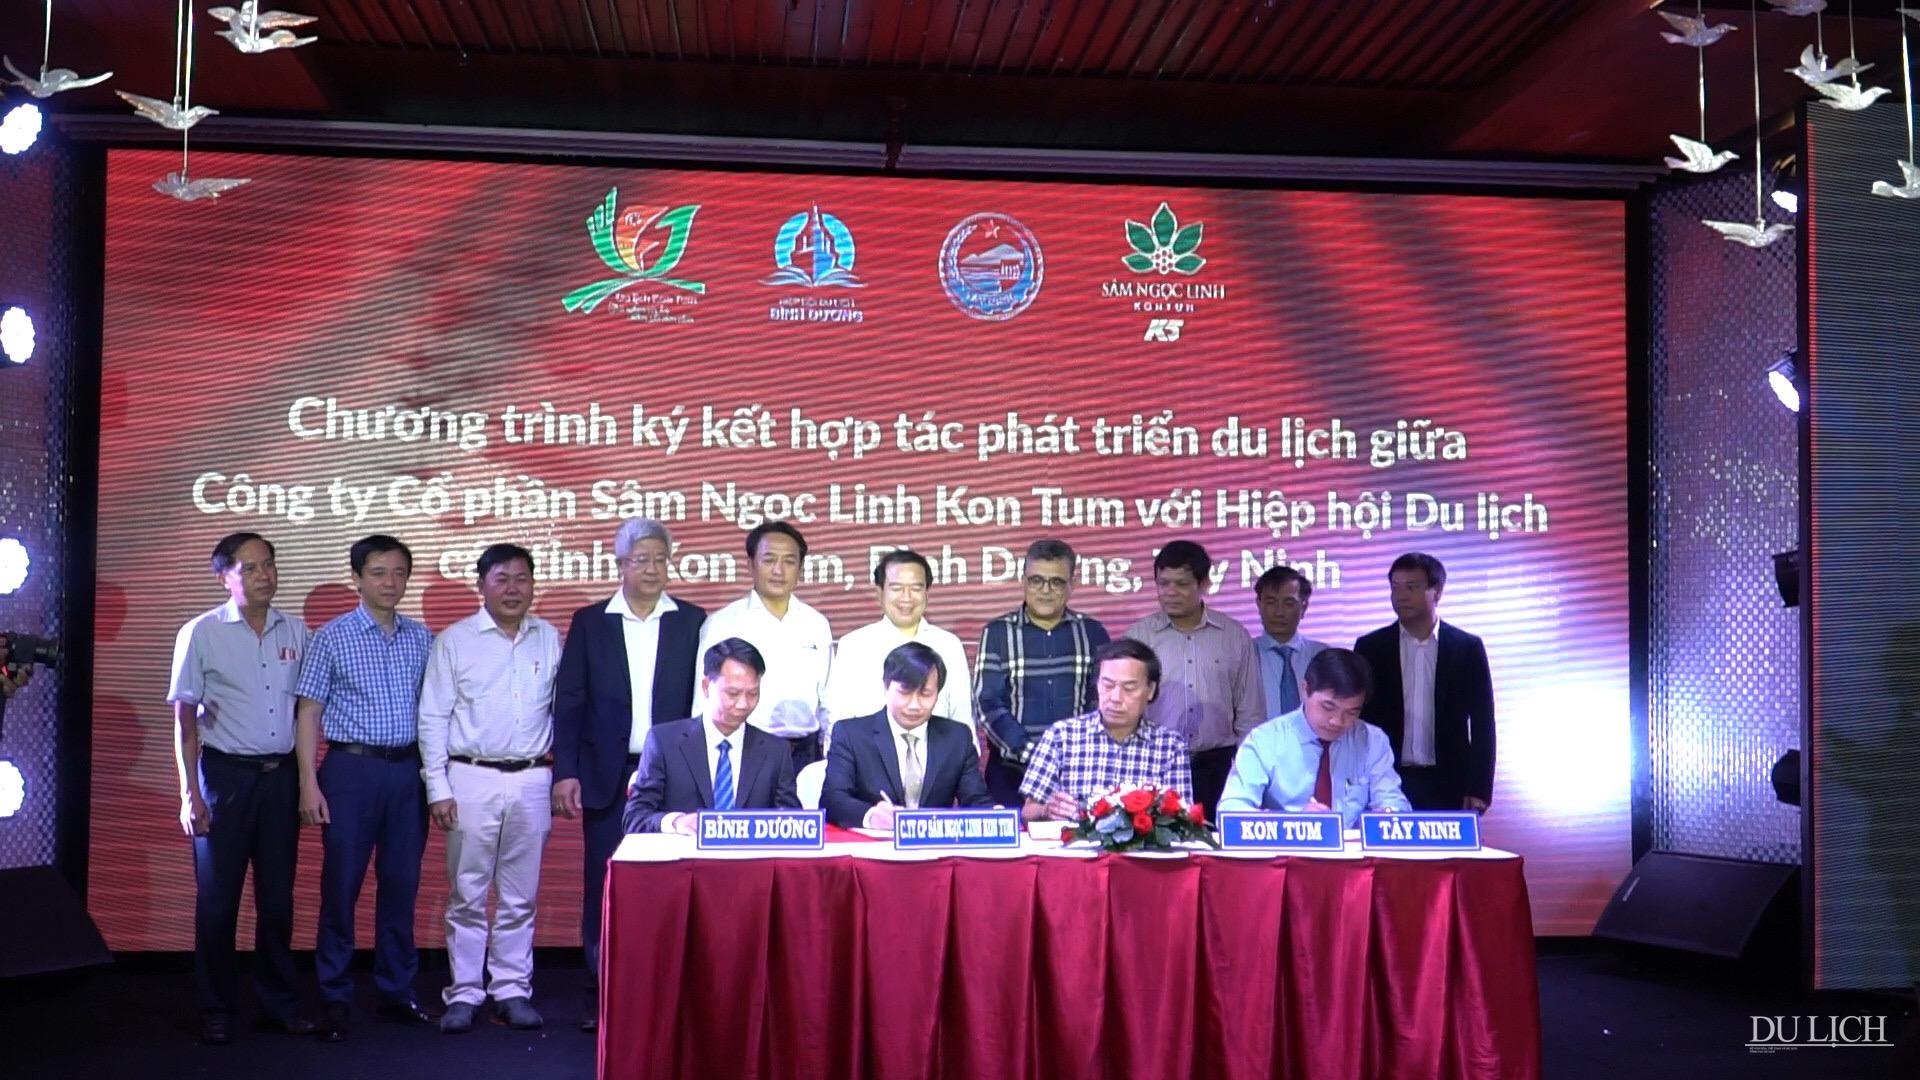 Công ty Cổ phần Sâm Ngọc Linh Kon Tum và Hiệp hội Du lịch các tỉnh: Kon Tum, Bình Dương, Tây Ninh đã thỏa thuận ký kết biên bản về hợp tác phát triển sản phẩm du lịch.